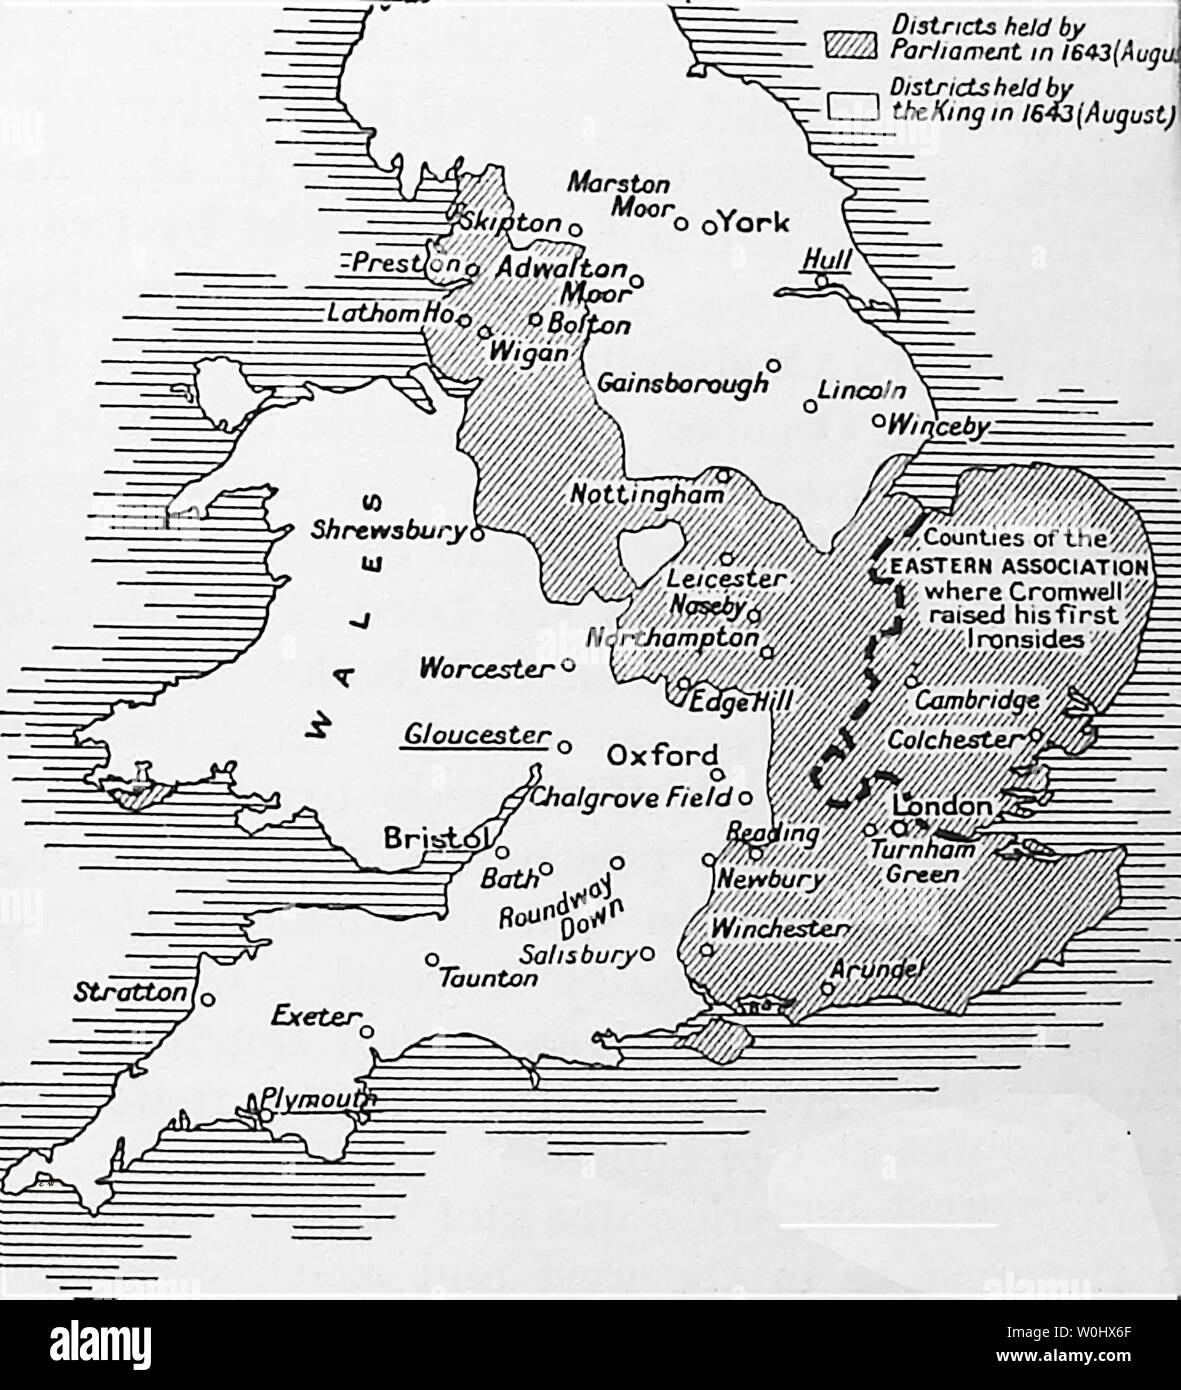 Un 1930 schoolbook mappa che mostra città inglesi (sottolineato) che erano fedeli al re nella guerra civile inglese e aree detenute da lui o da Cromwell's europeo 1643 - 1643 è stato il secondo anno della prima guerra civile inglese Foto Stock